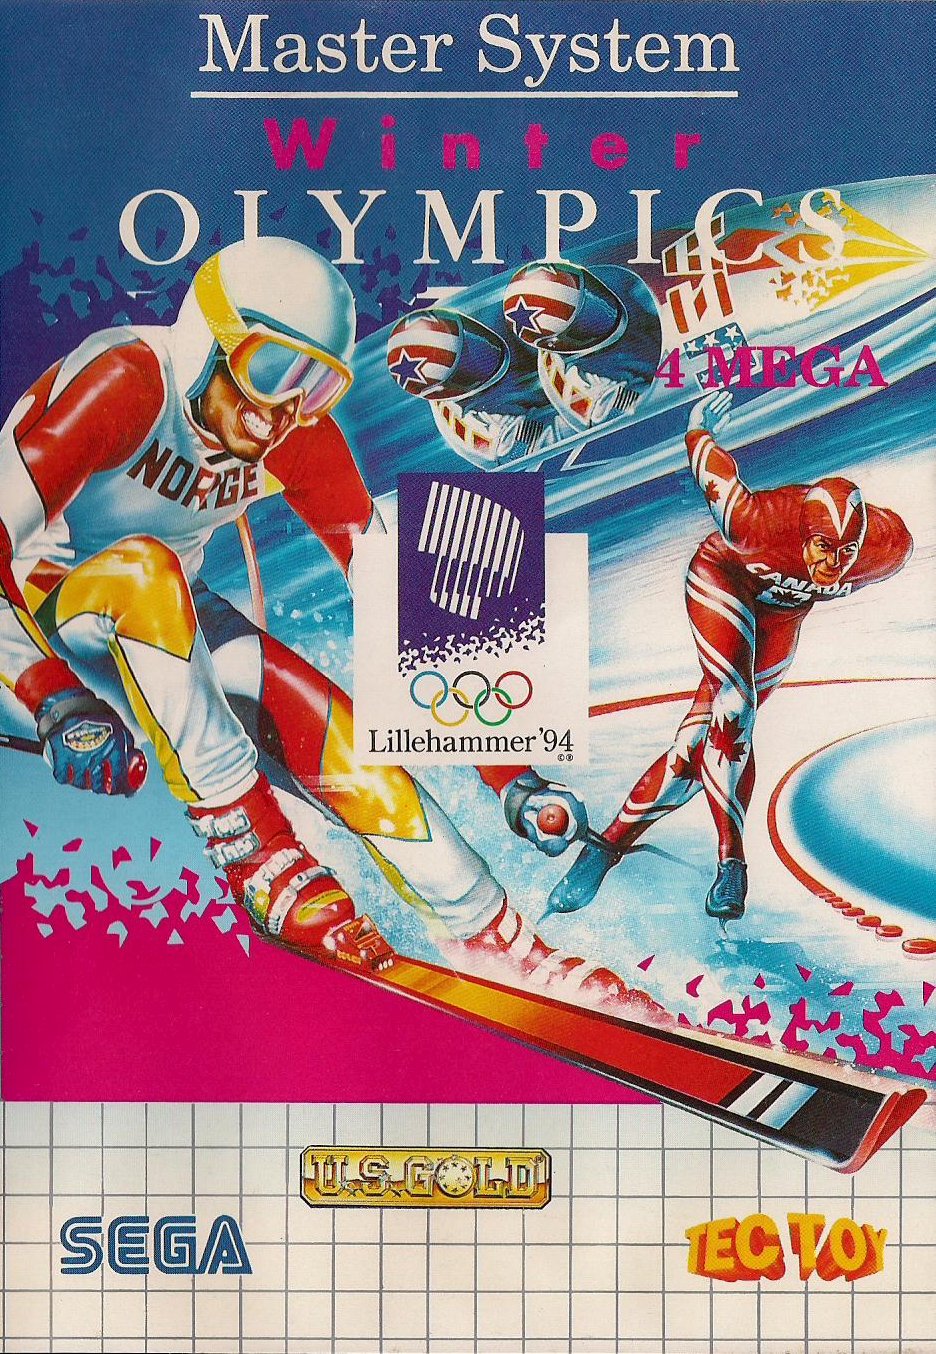 Capa do jogo Winter Olympics